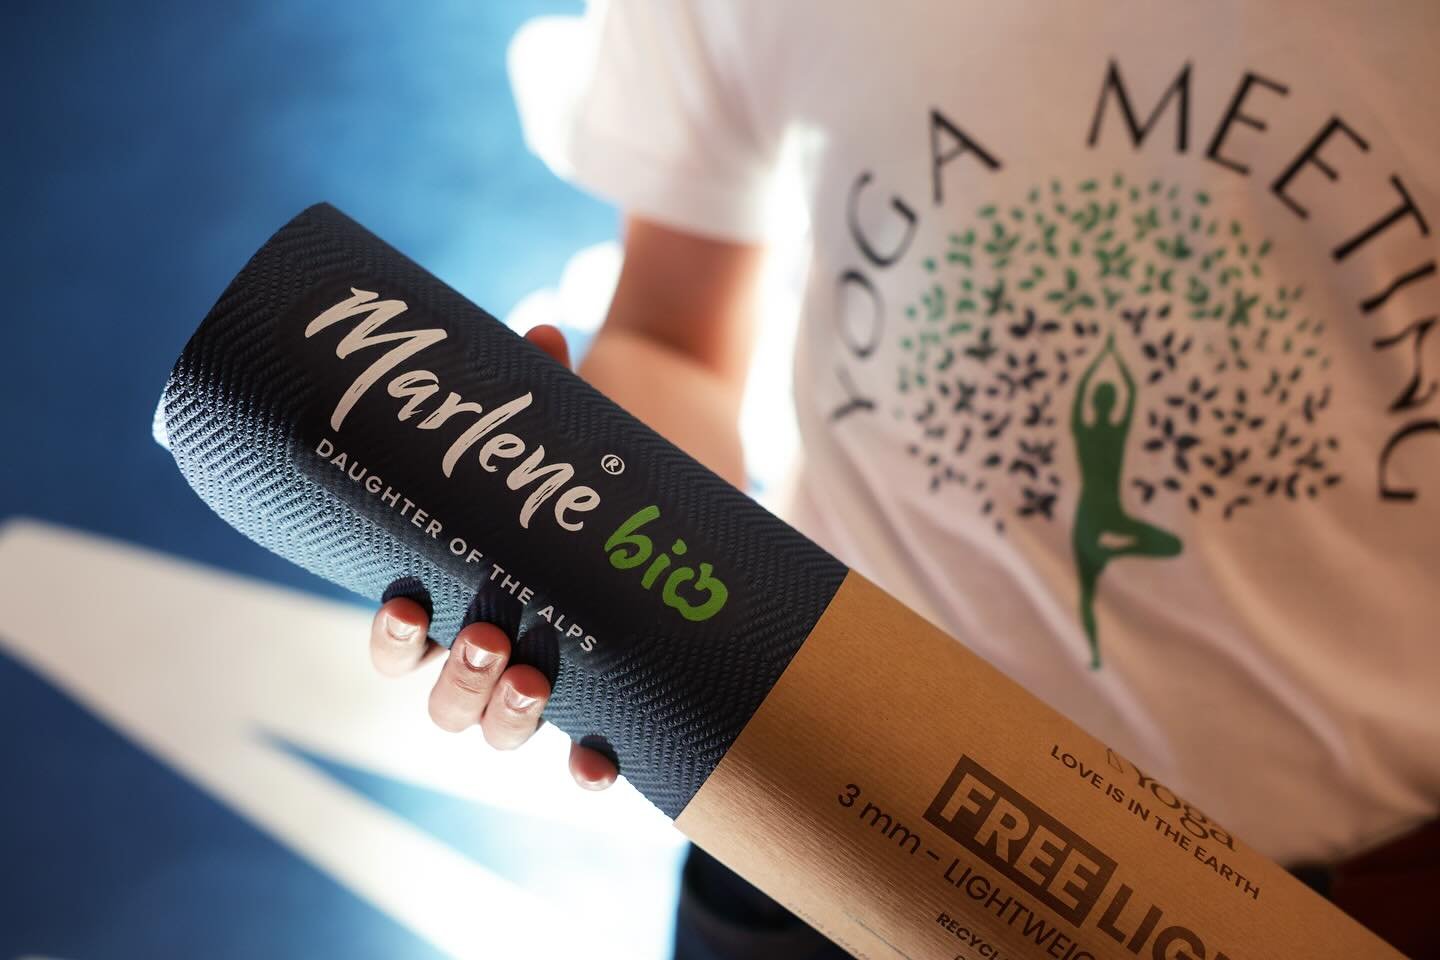 Ringraziamo Marlene 🍎 per i bellissimi regali di quest&rsquo;anno, venite a trovarci a Yoga Meeting per provare i prodotti di @marleneitalia #yogameetingmerano #marleneitalia 
Photo @merano.official